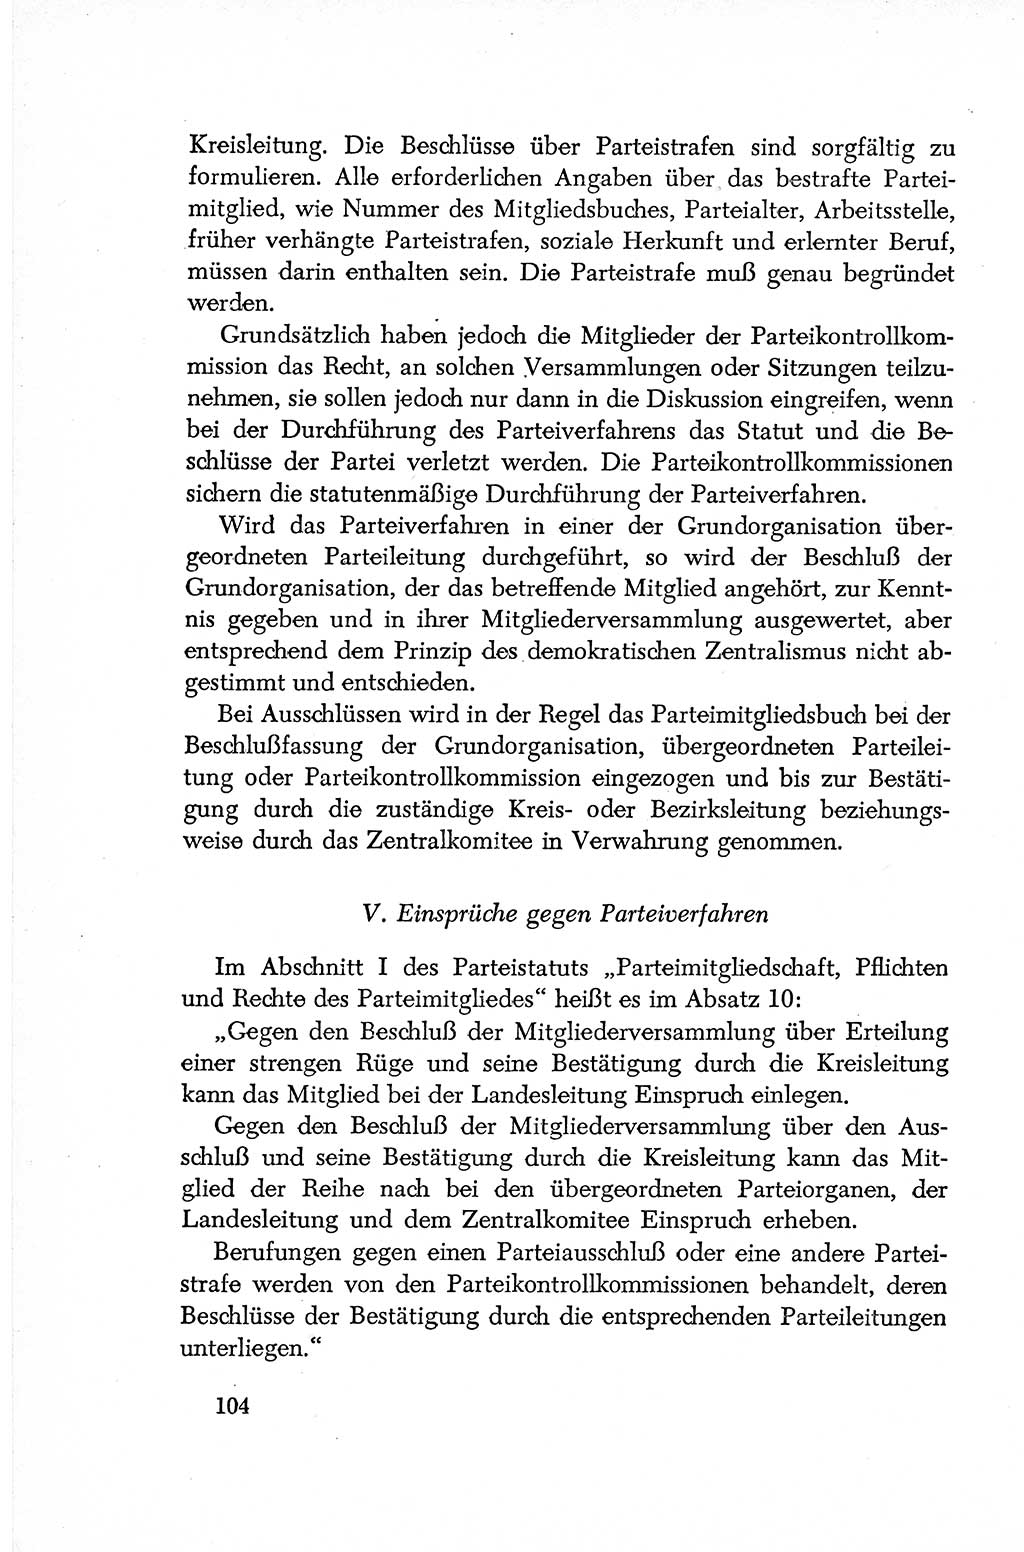 Dokumente der Sozialistischen Einheitspartei Deutschlands (SED) [Deutsche Demokratische Republik (DDR)] 1952-1953, Seite 104 (Dok. SED DDR 1952-1953, S. 104)